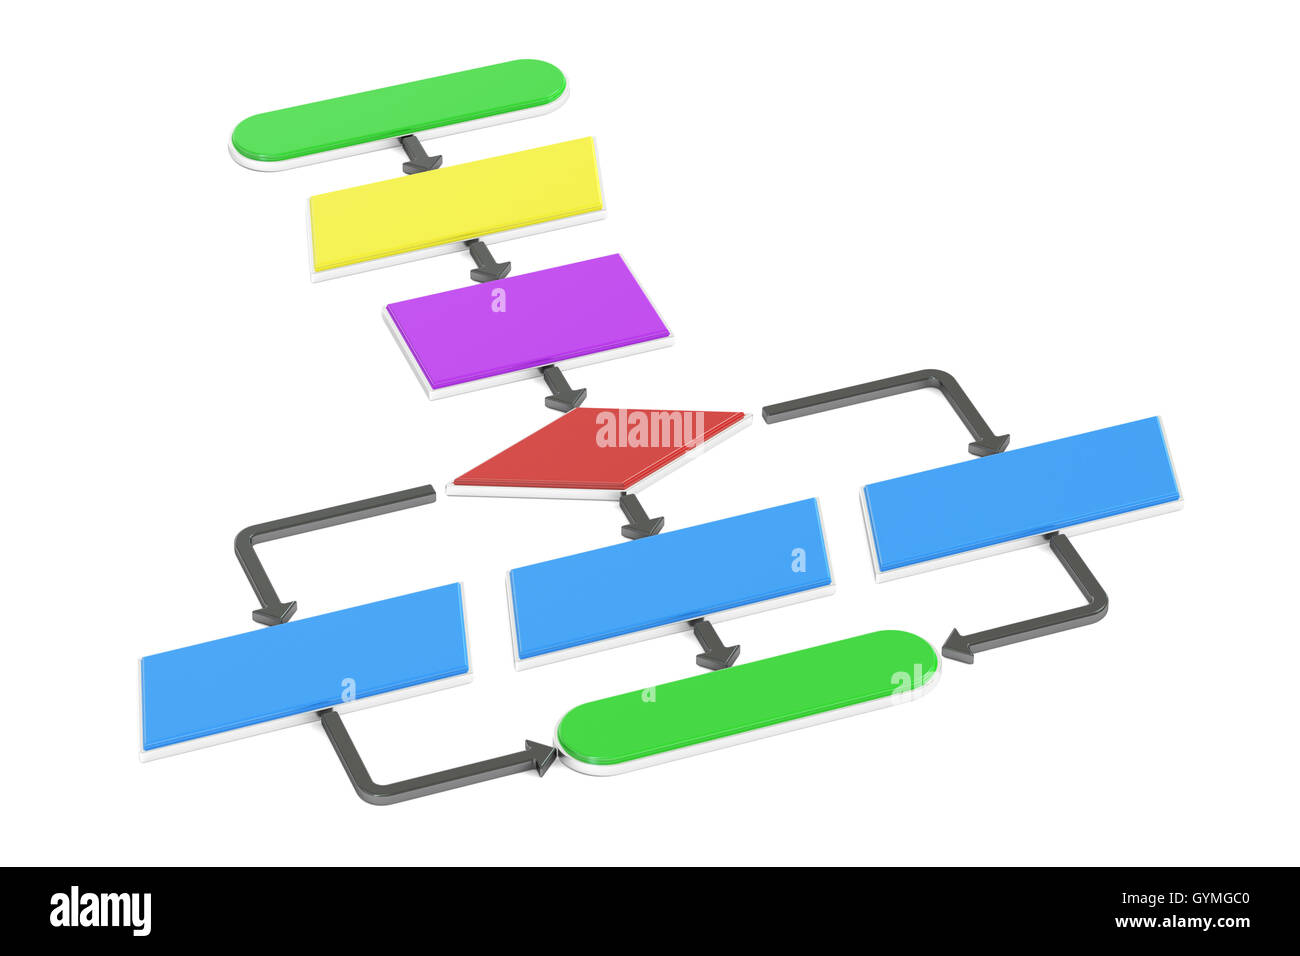 Algorithmus, Flussdiagramm. 3D-Rendering isoliert auf weißem Hintergrund Stockfoto